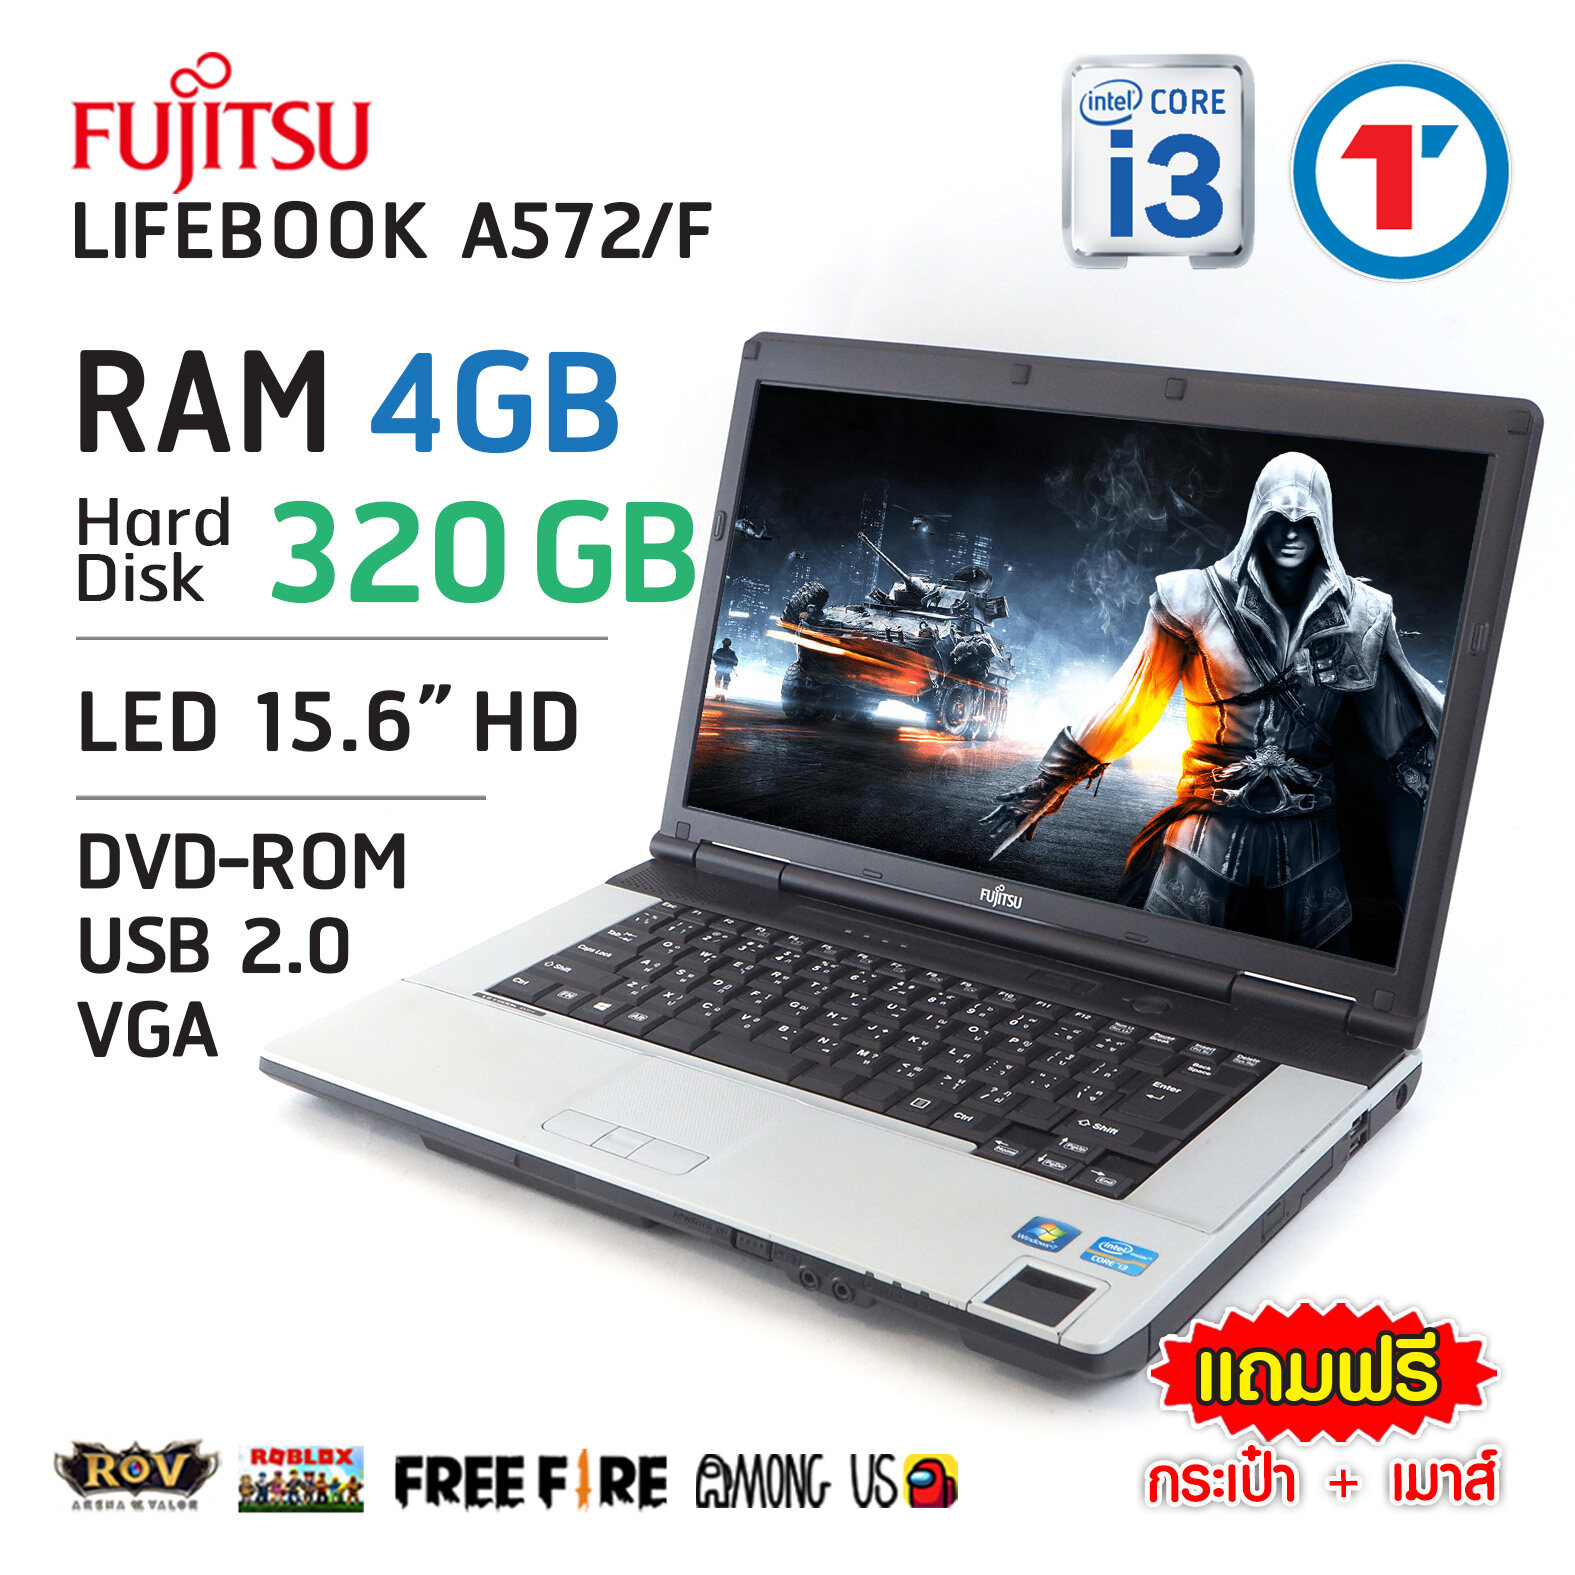 โน๊ตบุ๊ค Fujitsu Lifebook A572/F - Core i3 GEN 3 HDD 320 GB หน้าจอ 15.6 นิ้ว WiFi ในตัว Refurbished laptop used notebook computer คอมมือสอง 2020 ส่งฟรี สภาพดี By Totalsolution